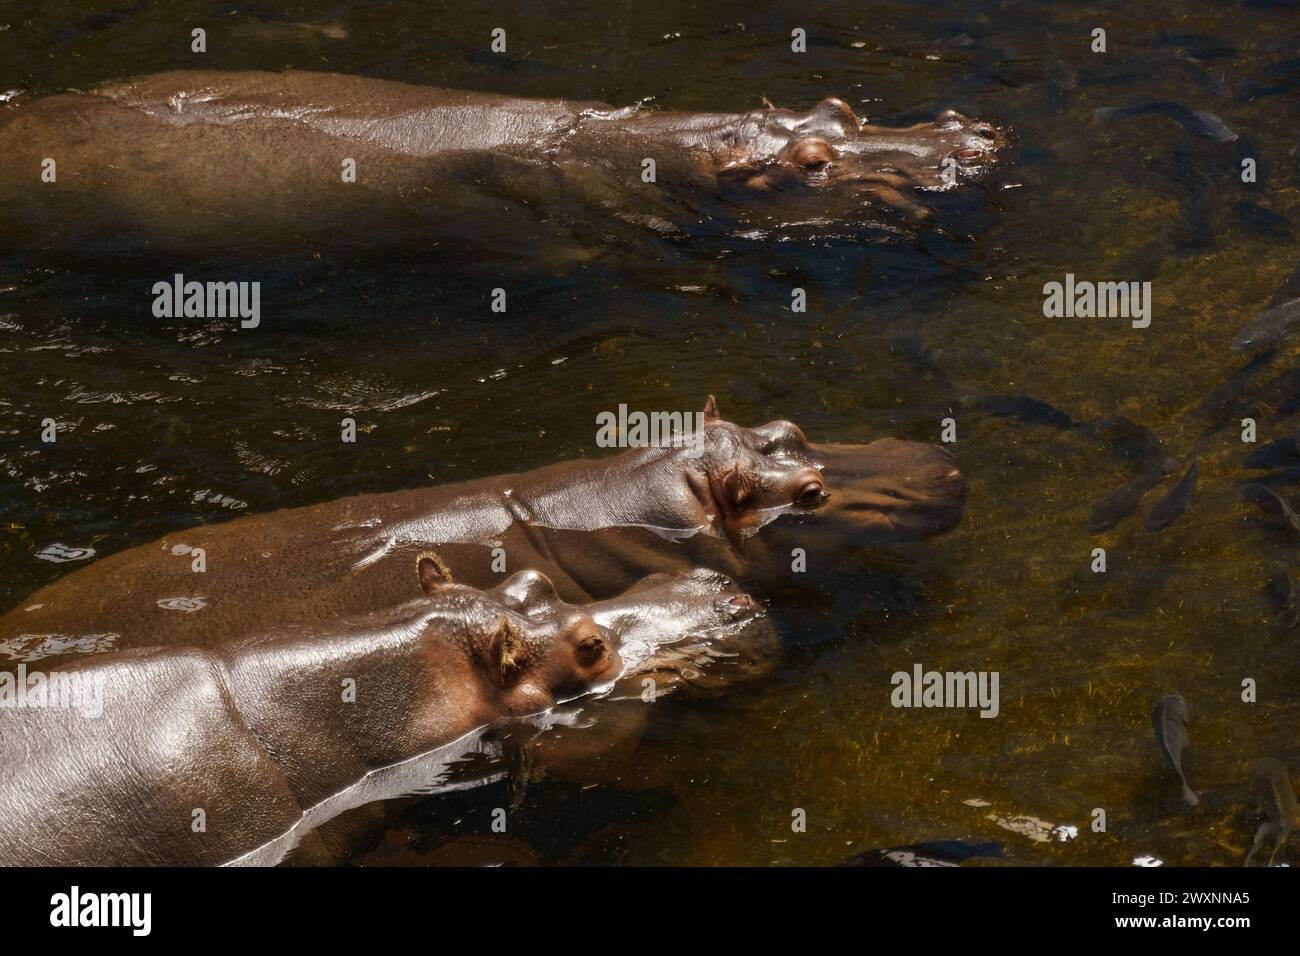 Drei Flusspferde, große Meeressäuger, schwimmen in einem Gewässer, ihre Körper teilweise untergetaucht, nur ihre Köpfe sichtbar. Stockfoto